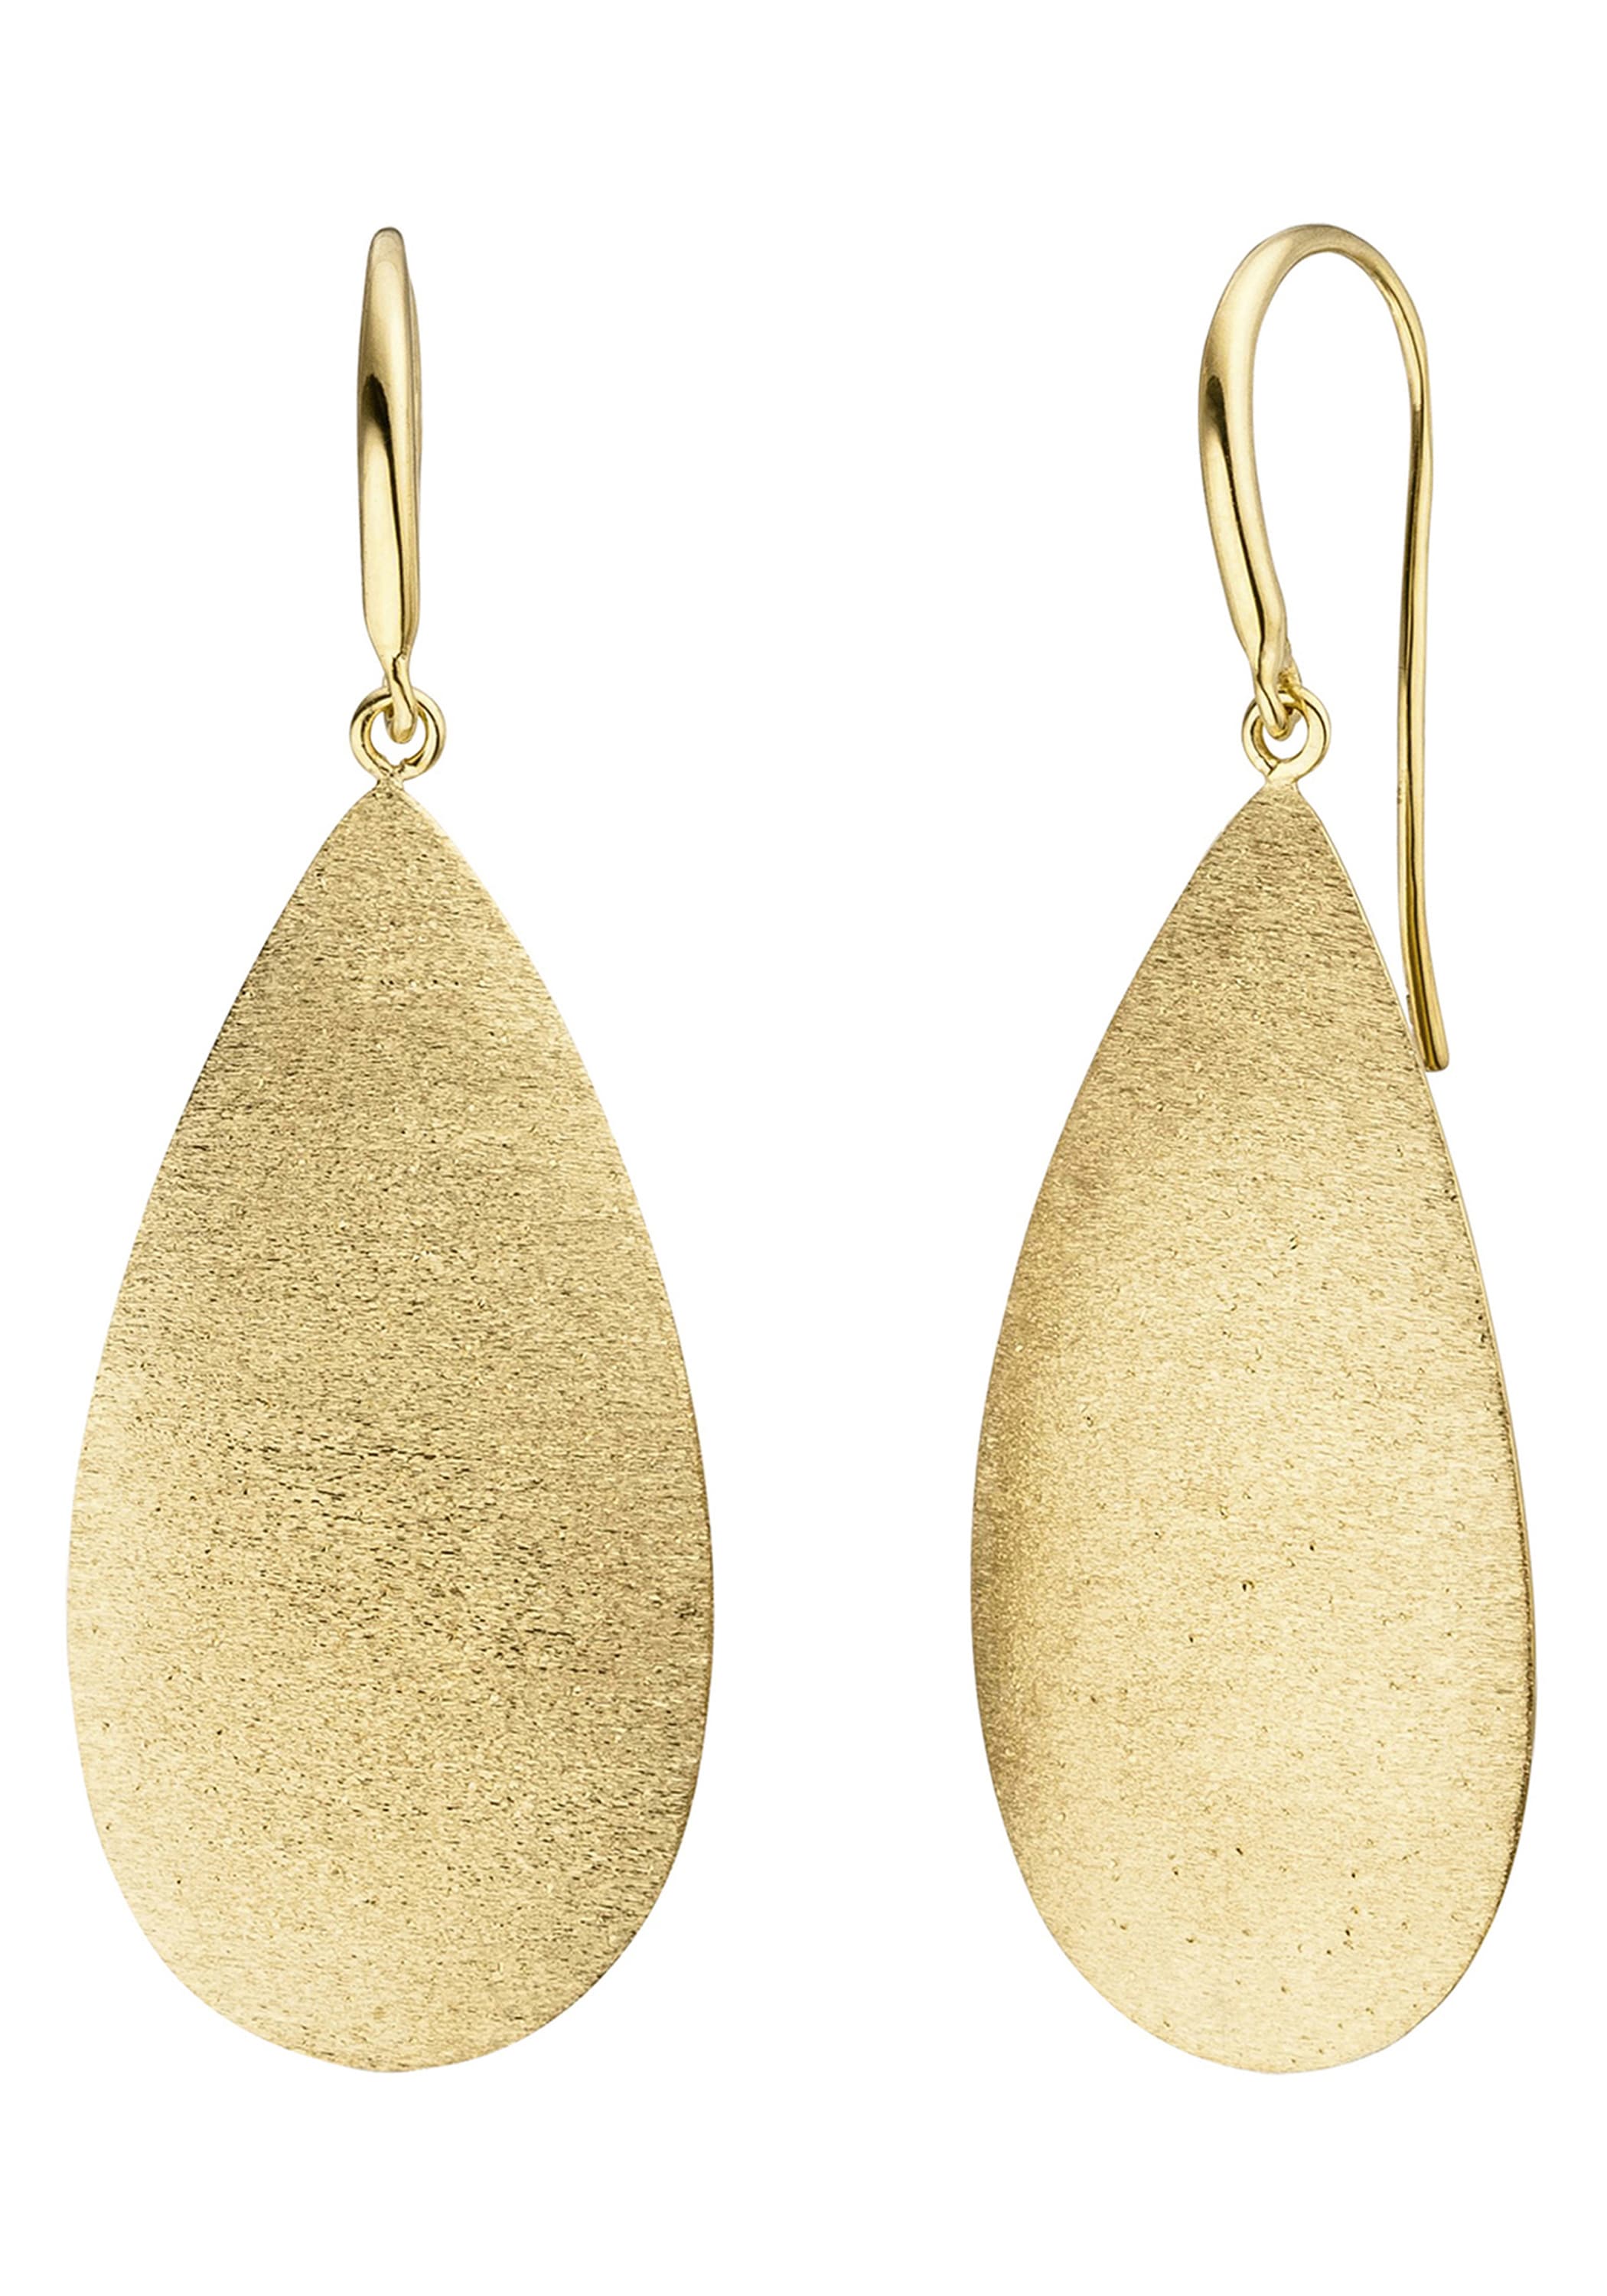 JOBO Paar Ohrhänger vergoldet 925 »Tropfen« Silber